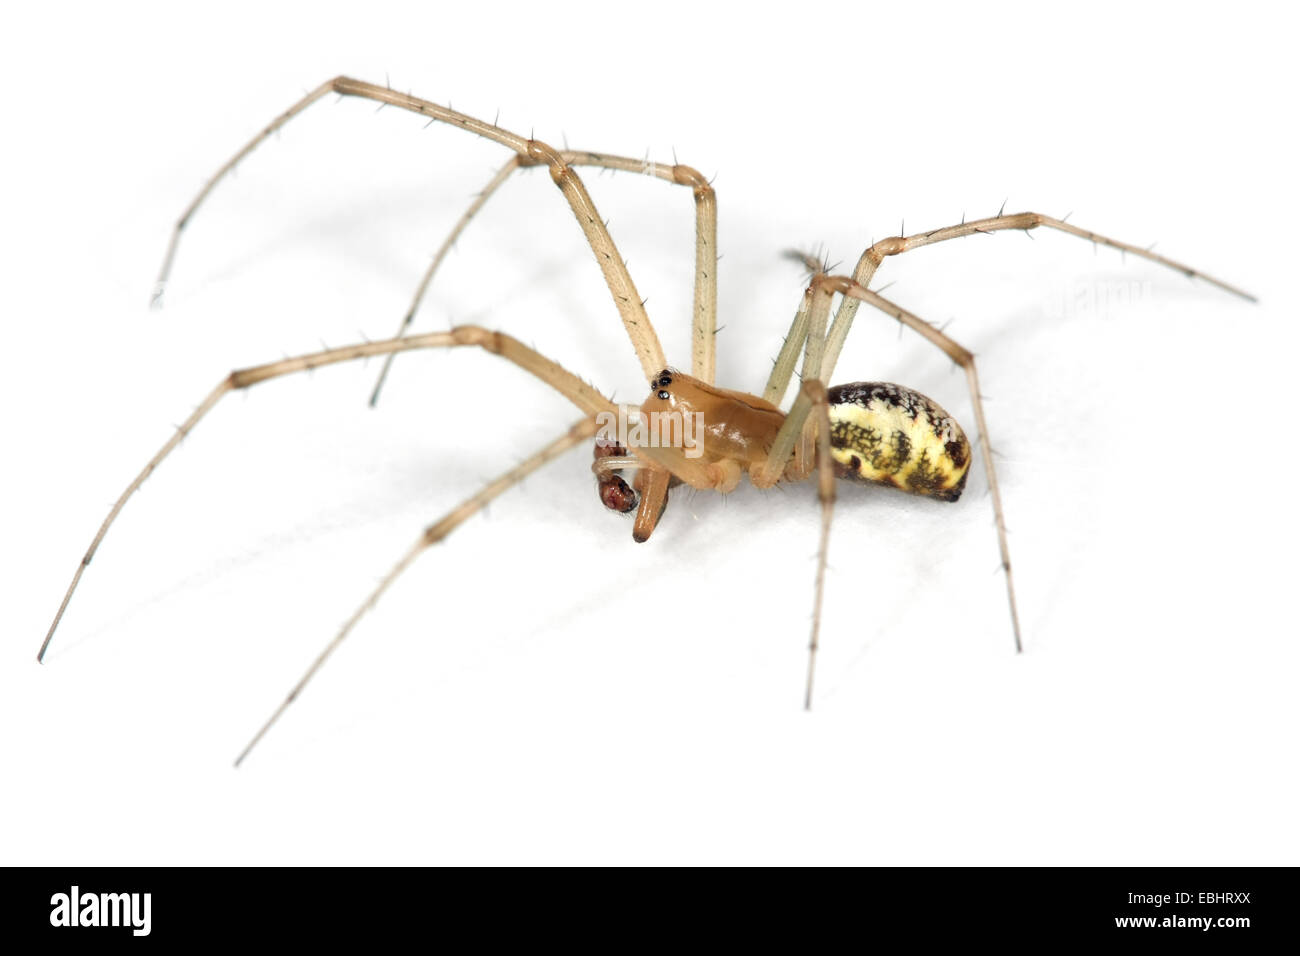 Un homme politique Hamac-Weaver (Linyphia triangularis) araignée sur un fond blanc, une partie de la famille des Amphinectidae - Sheetweb weavers. Banque D'Images